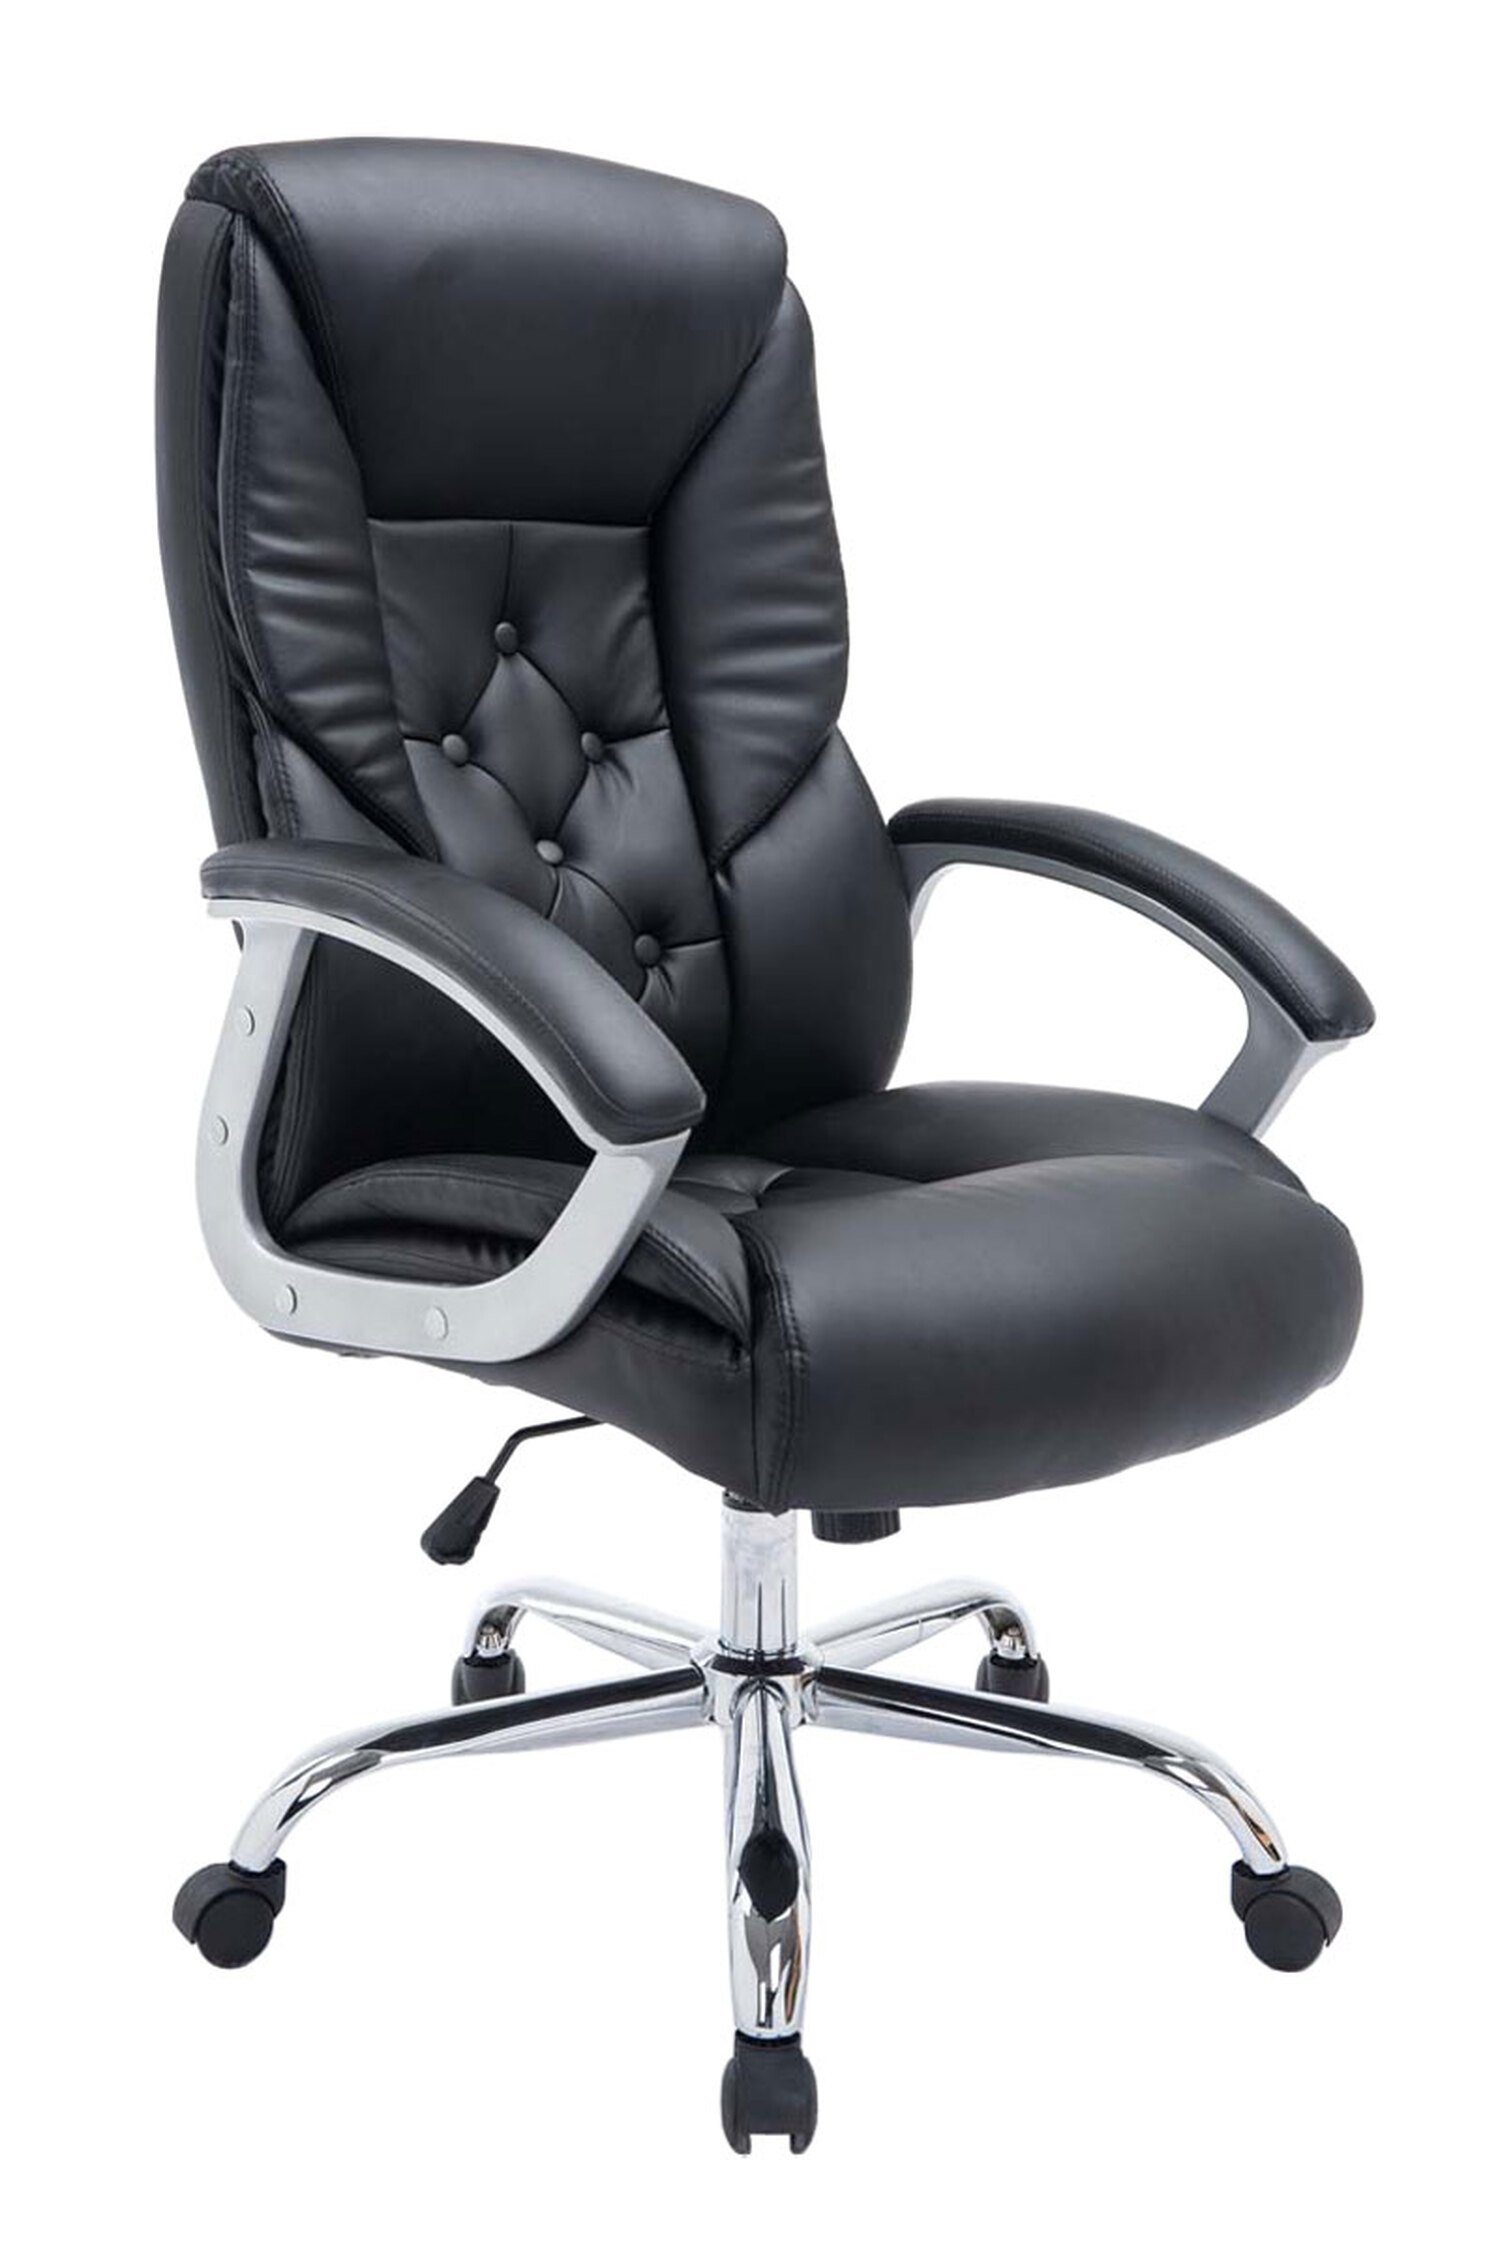 TPFLiving Bürostuhl Rhodos mit bequemer Rückenlehne - höhenverstellbar und 360° drehbar, Gestell: Metall chrom - Sitz: Kunstleder schwarz